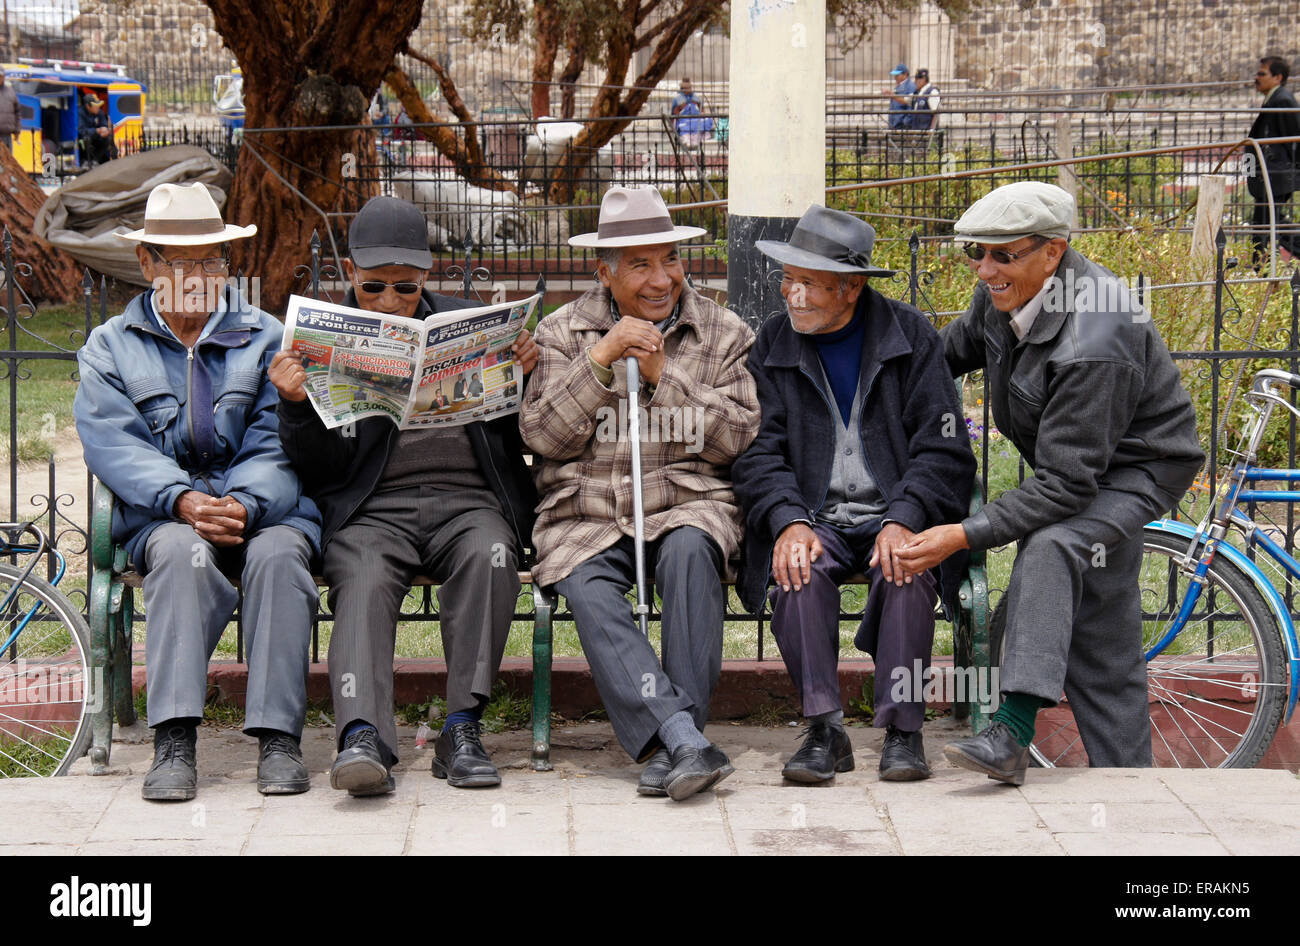 Los hombres socializar en un banco del parque en el municipio Plaza, Lampa, Perú Foto de stock